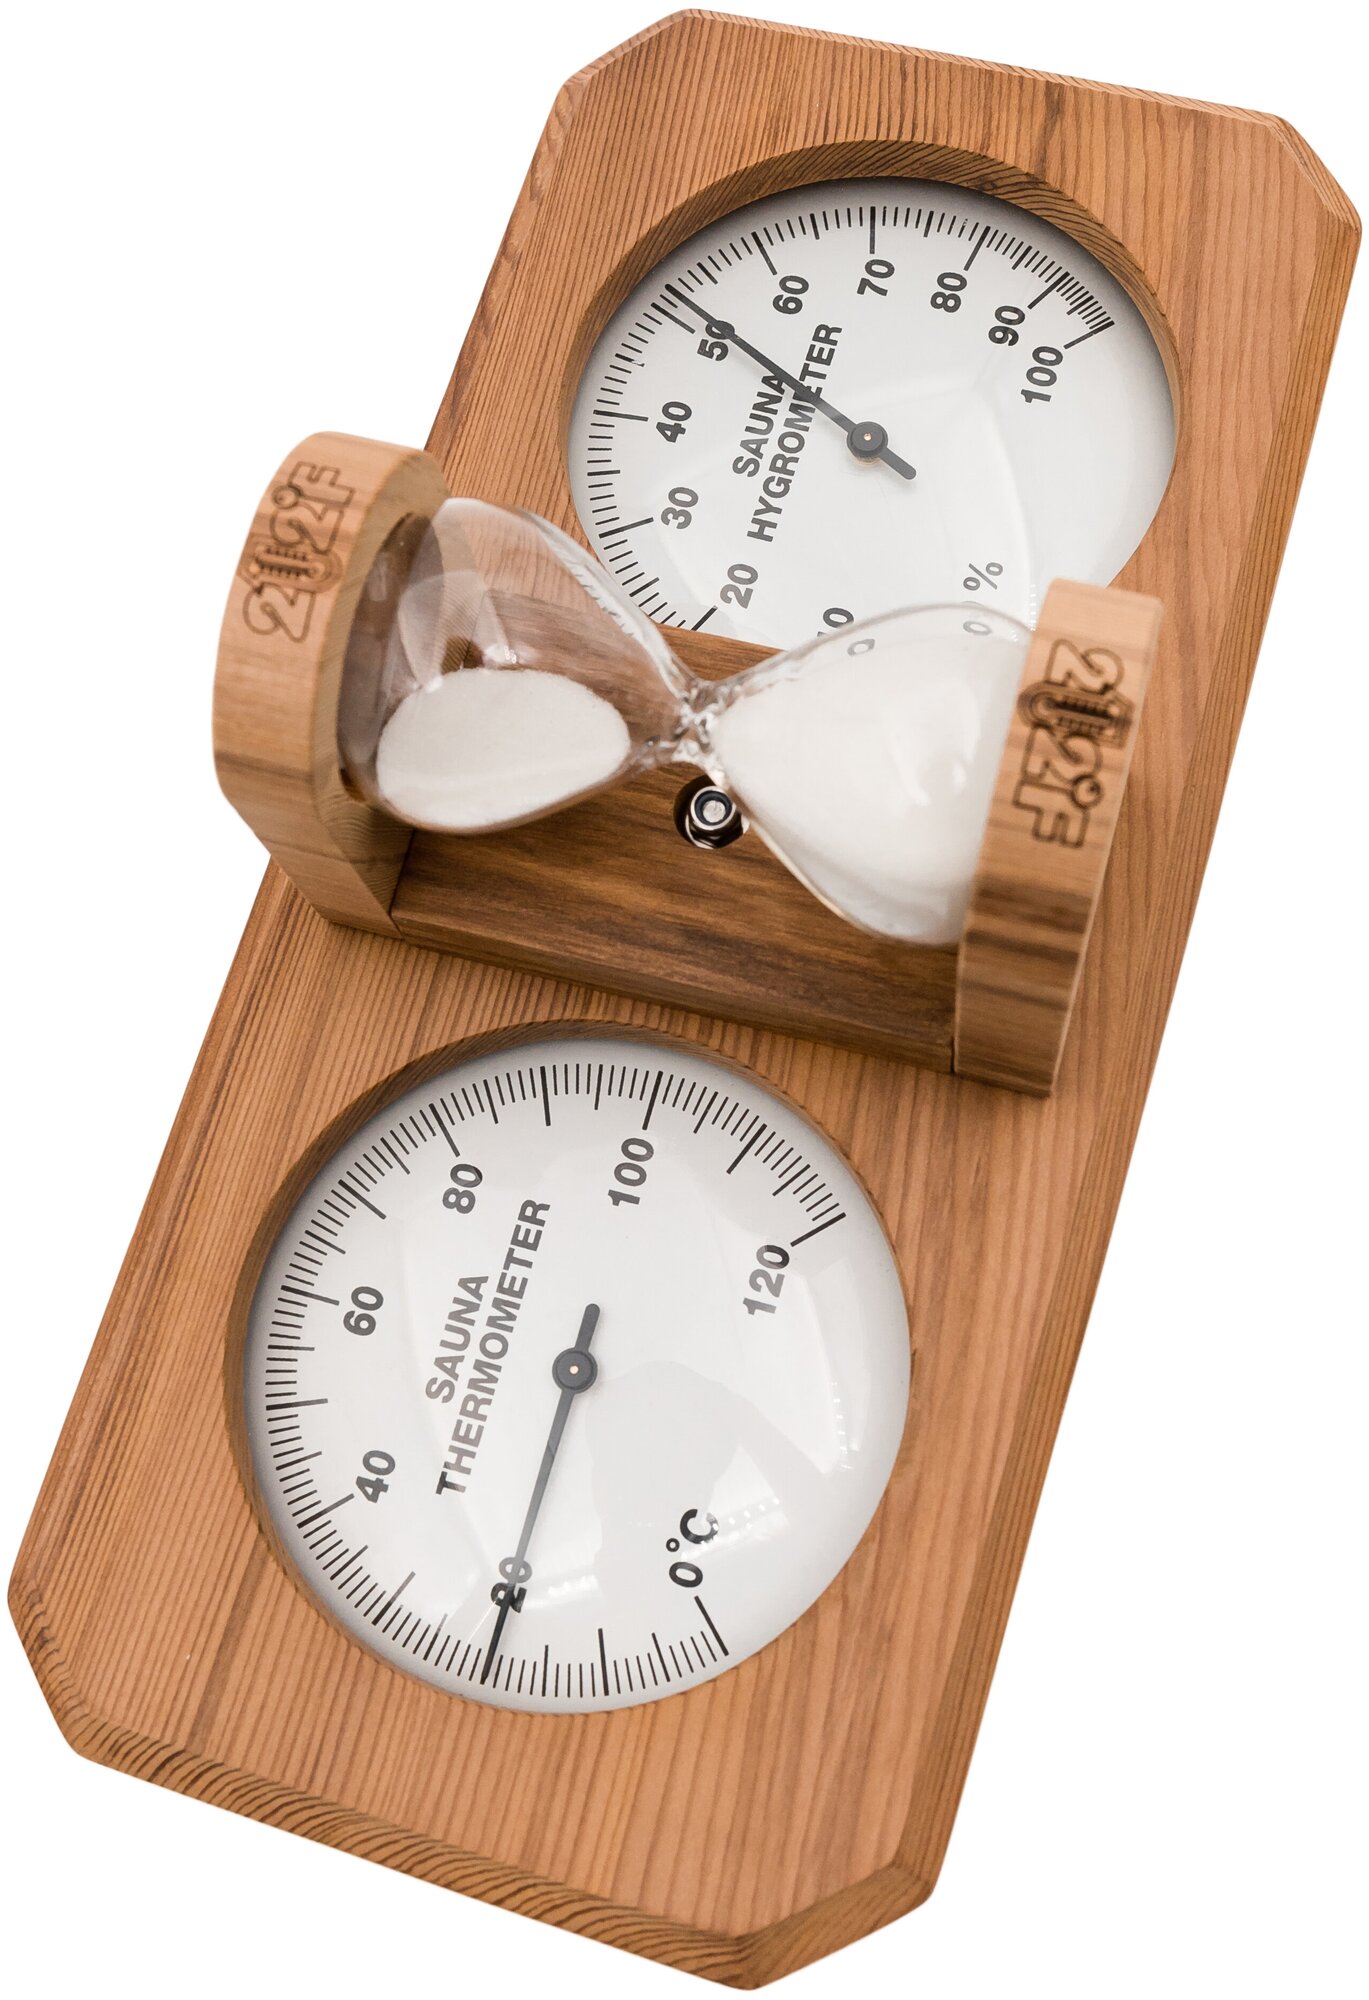 212F Темогигрометр для бани и сауны с песочными часами (Серебро)